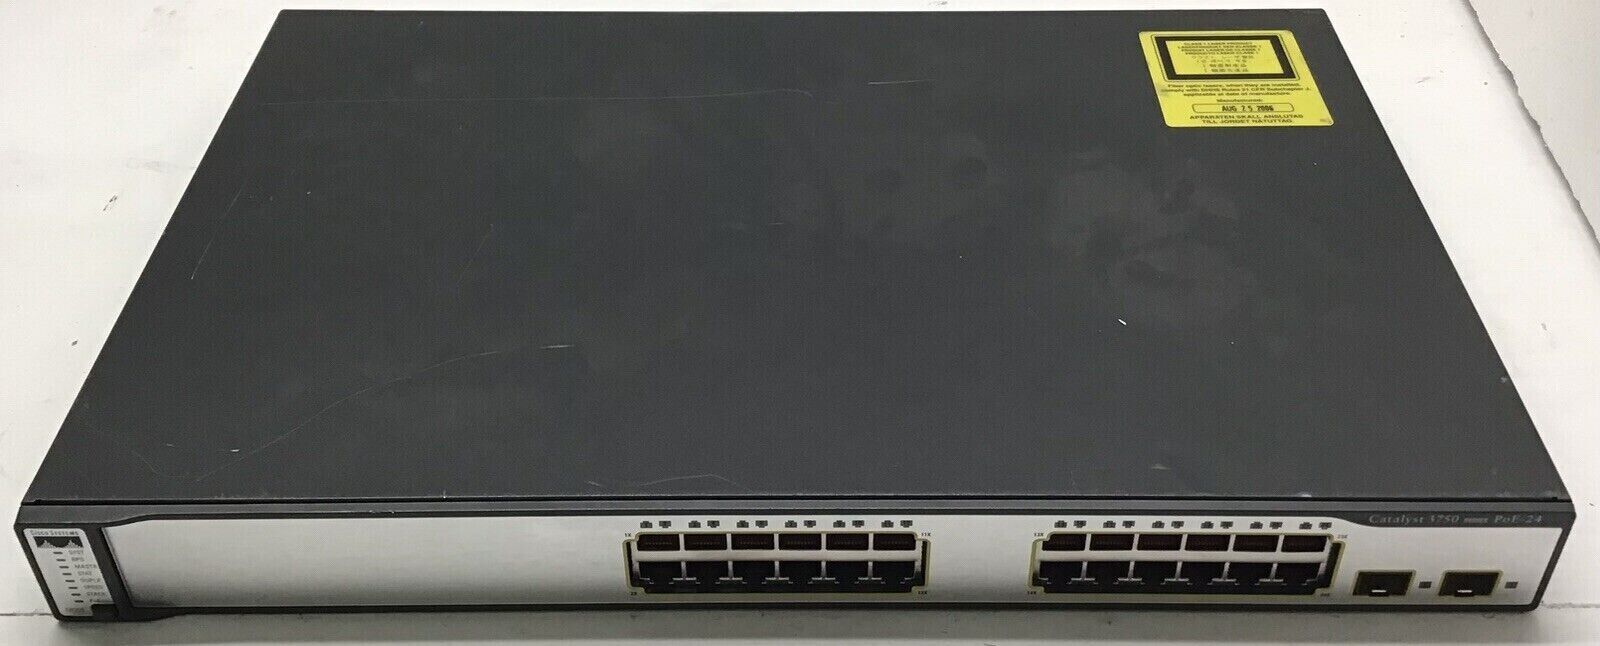 Cisco WS-C3750-24PS-S 24-Ports Lyr 3 Switch